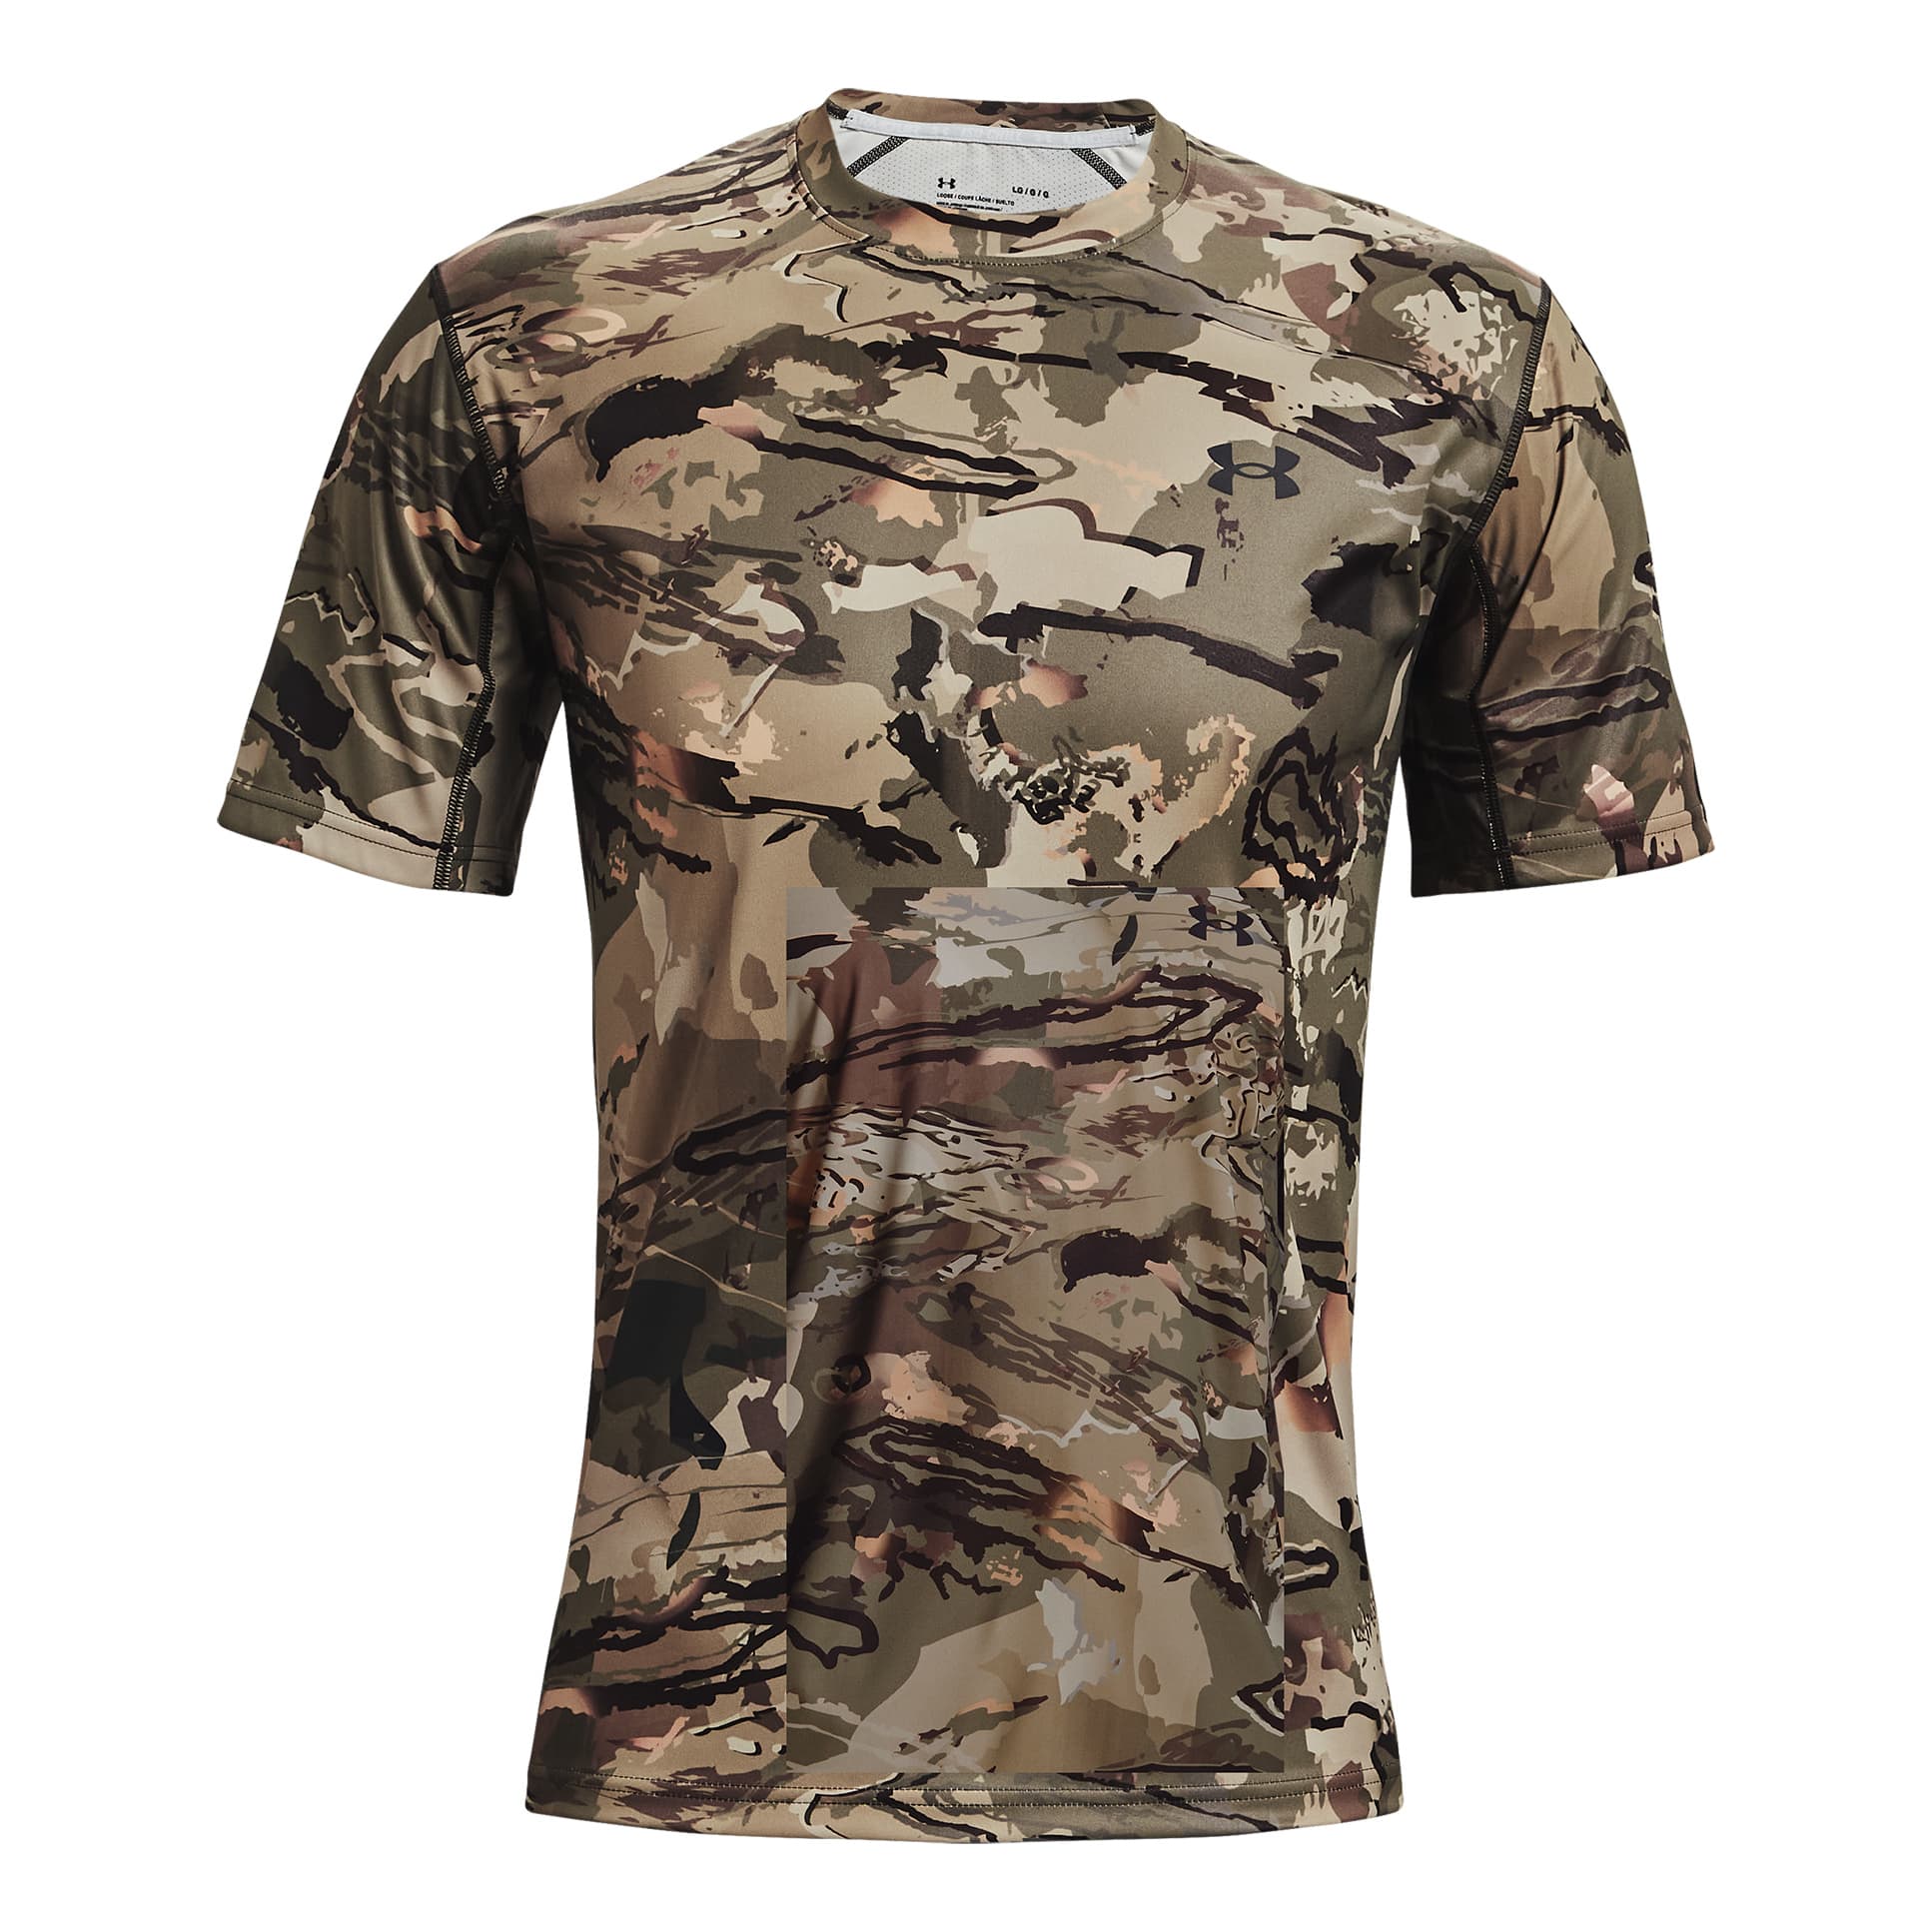 Under Armour ColdGear Infrared Tactical Men's Short Sleeve Shirt